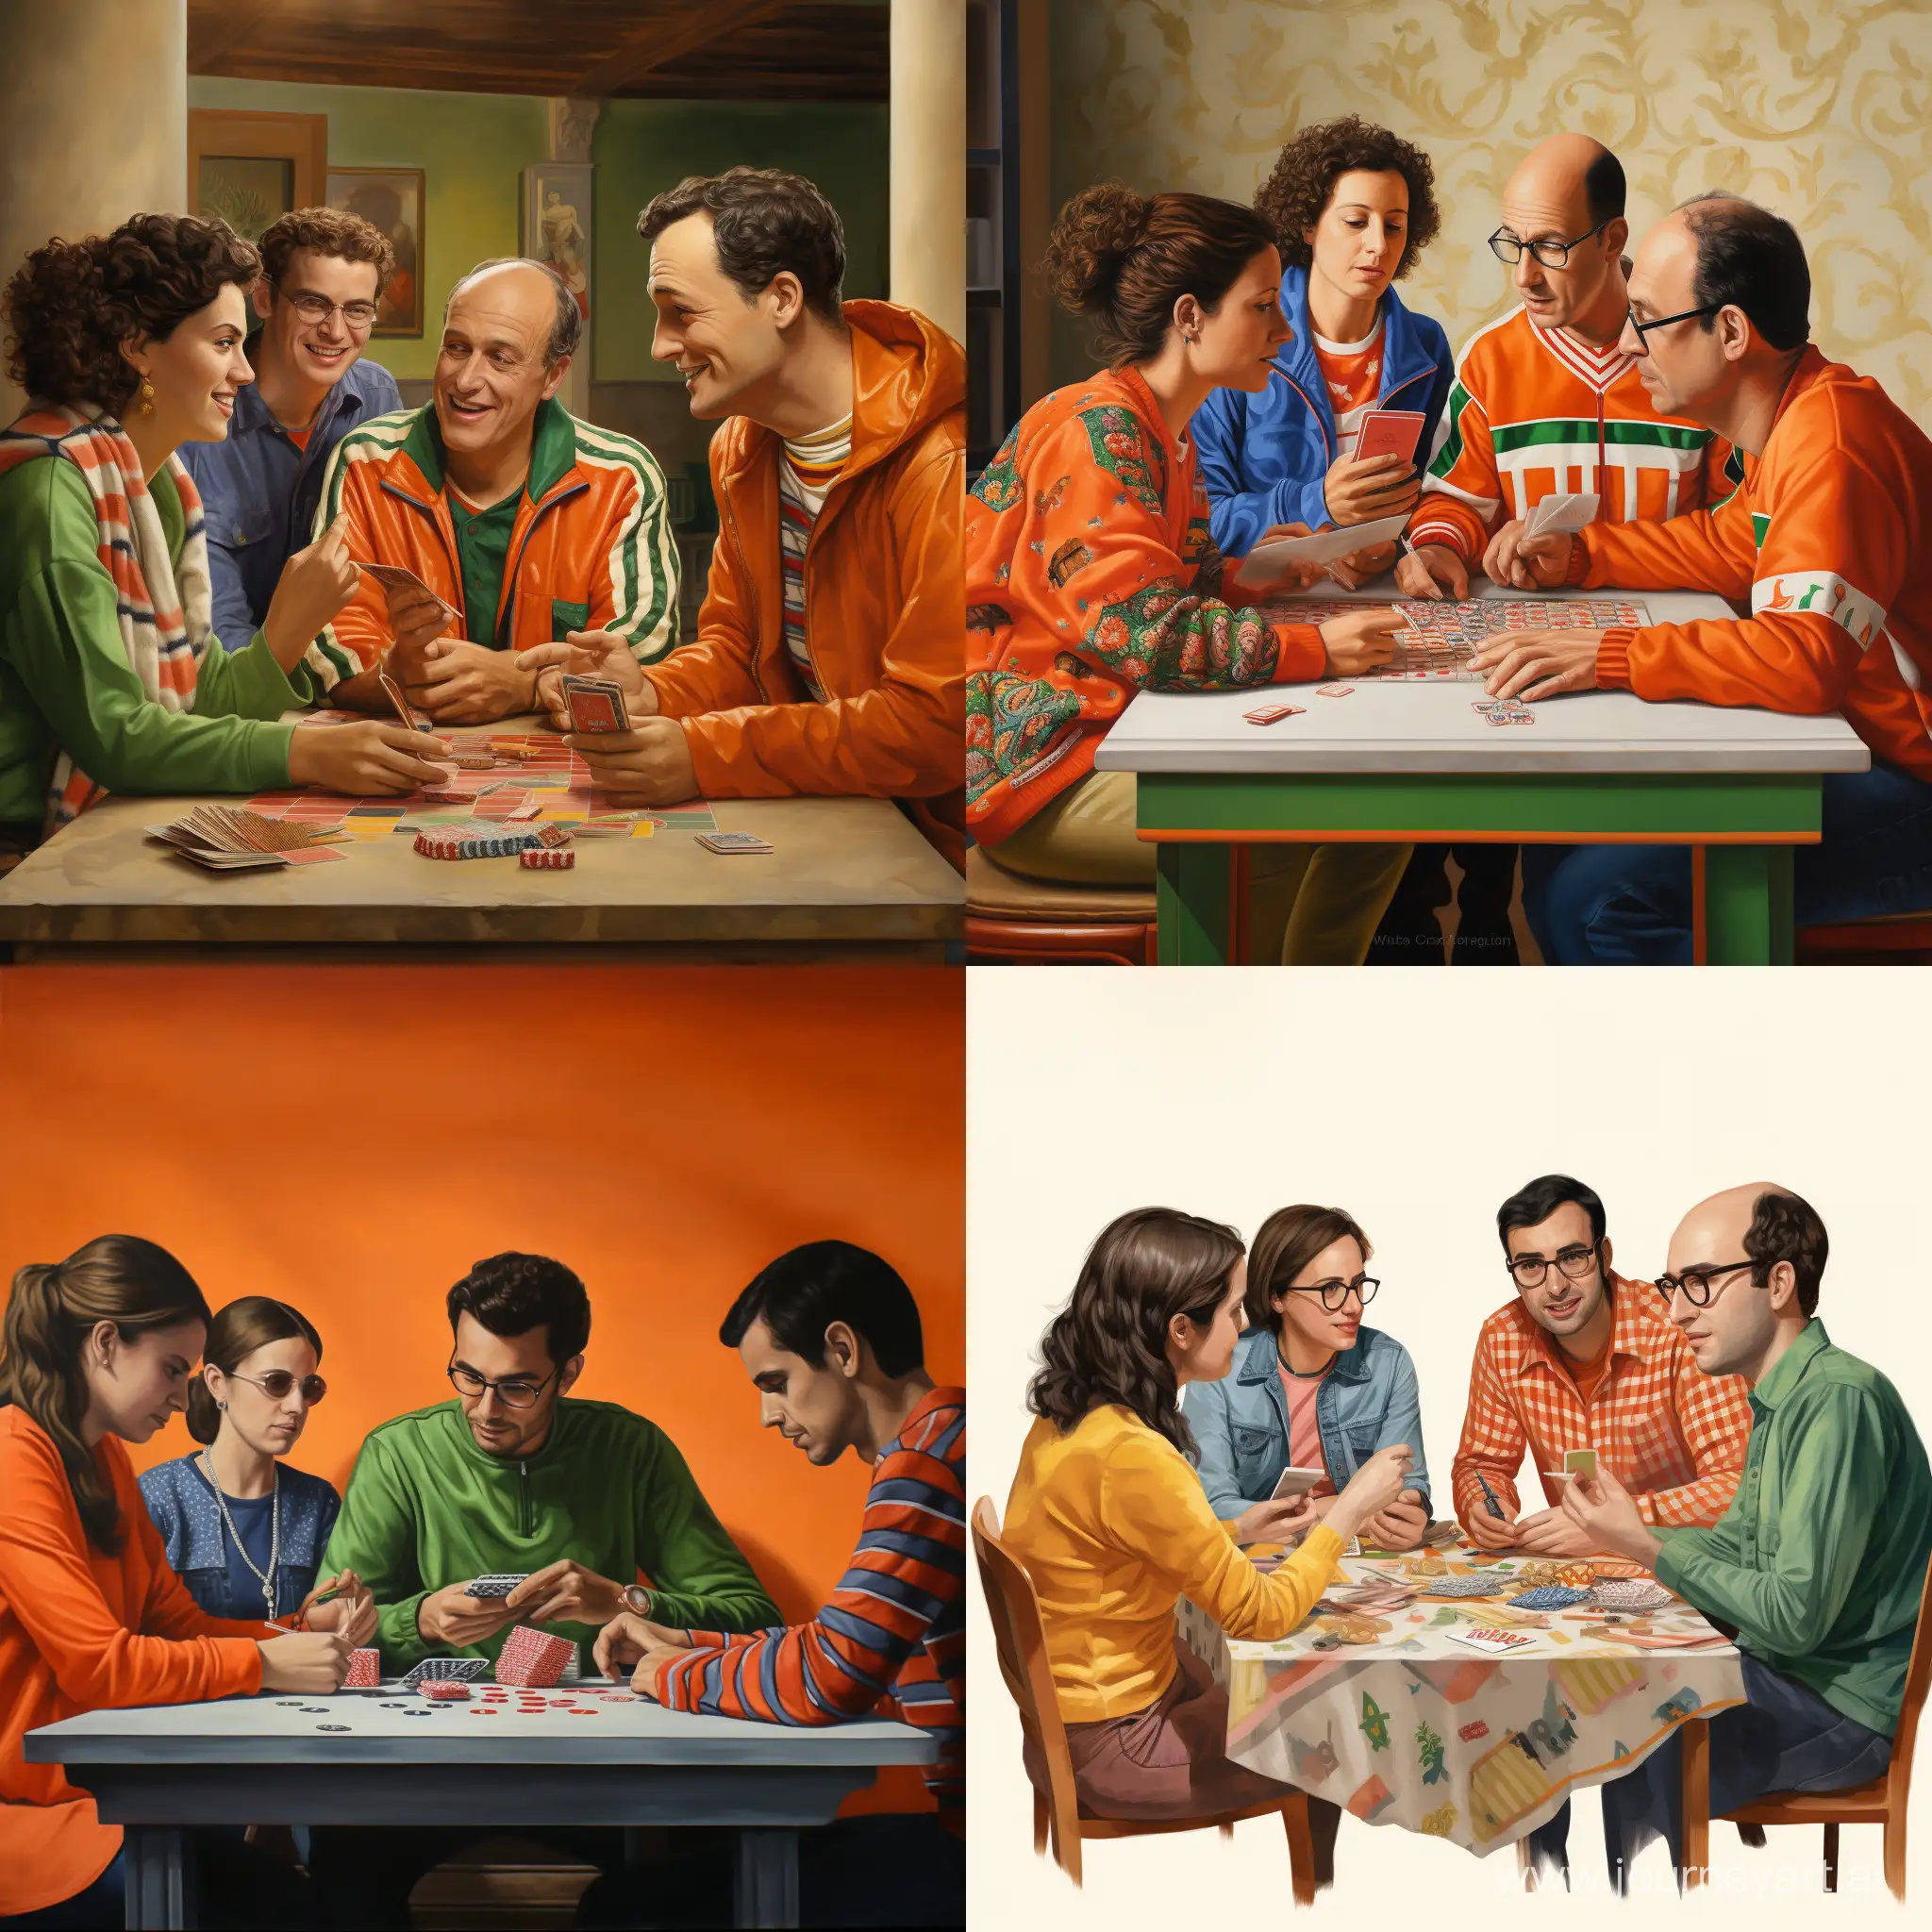 4 pressione sedute ad un tavolo, giocano a carte Scopa (gioco siciliano. Un ragazzo ha la maglia arancione, una altro il giubbotto verde, un altro una magliettina a righe, un altro ha una copertina addosso.